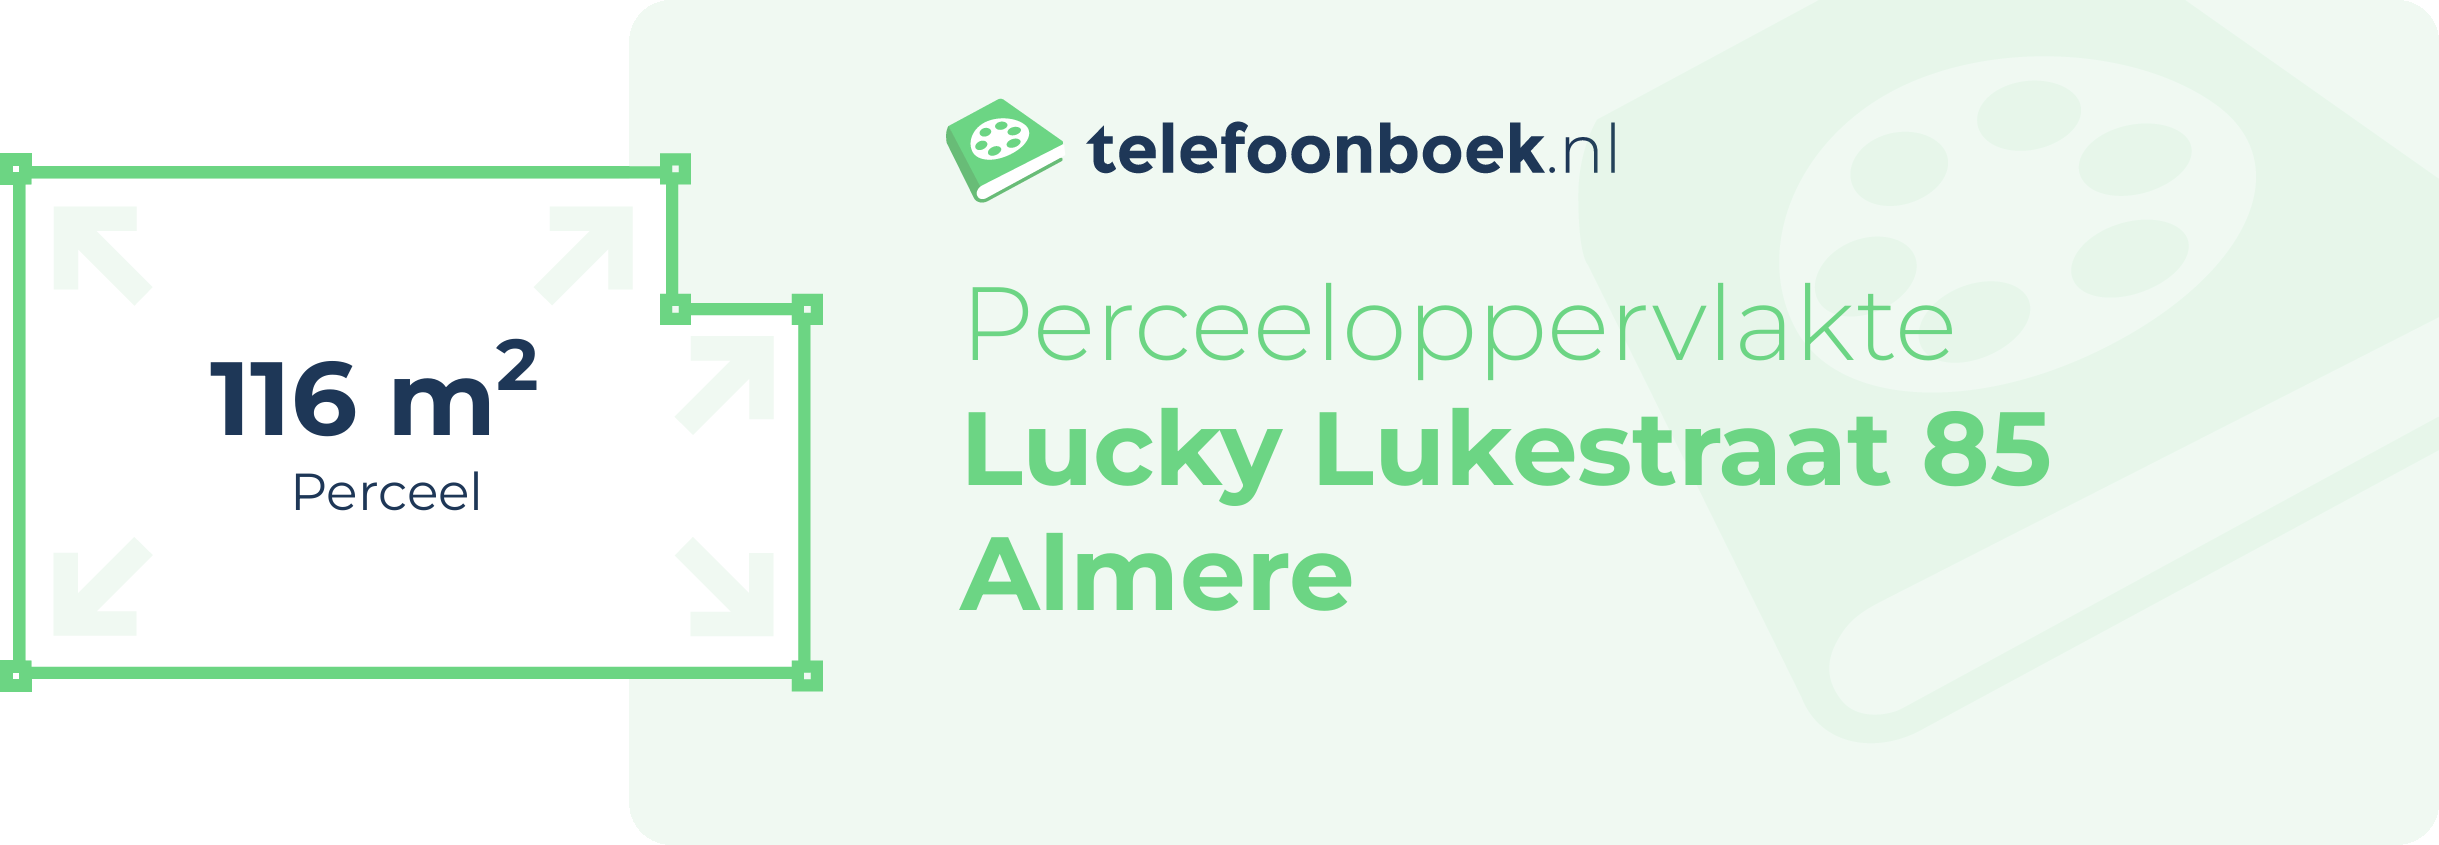 Perceeloppervlakte Lucky Lukestraat 85 Almere